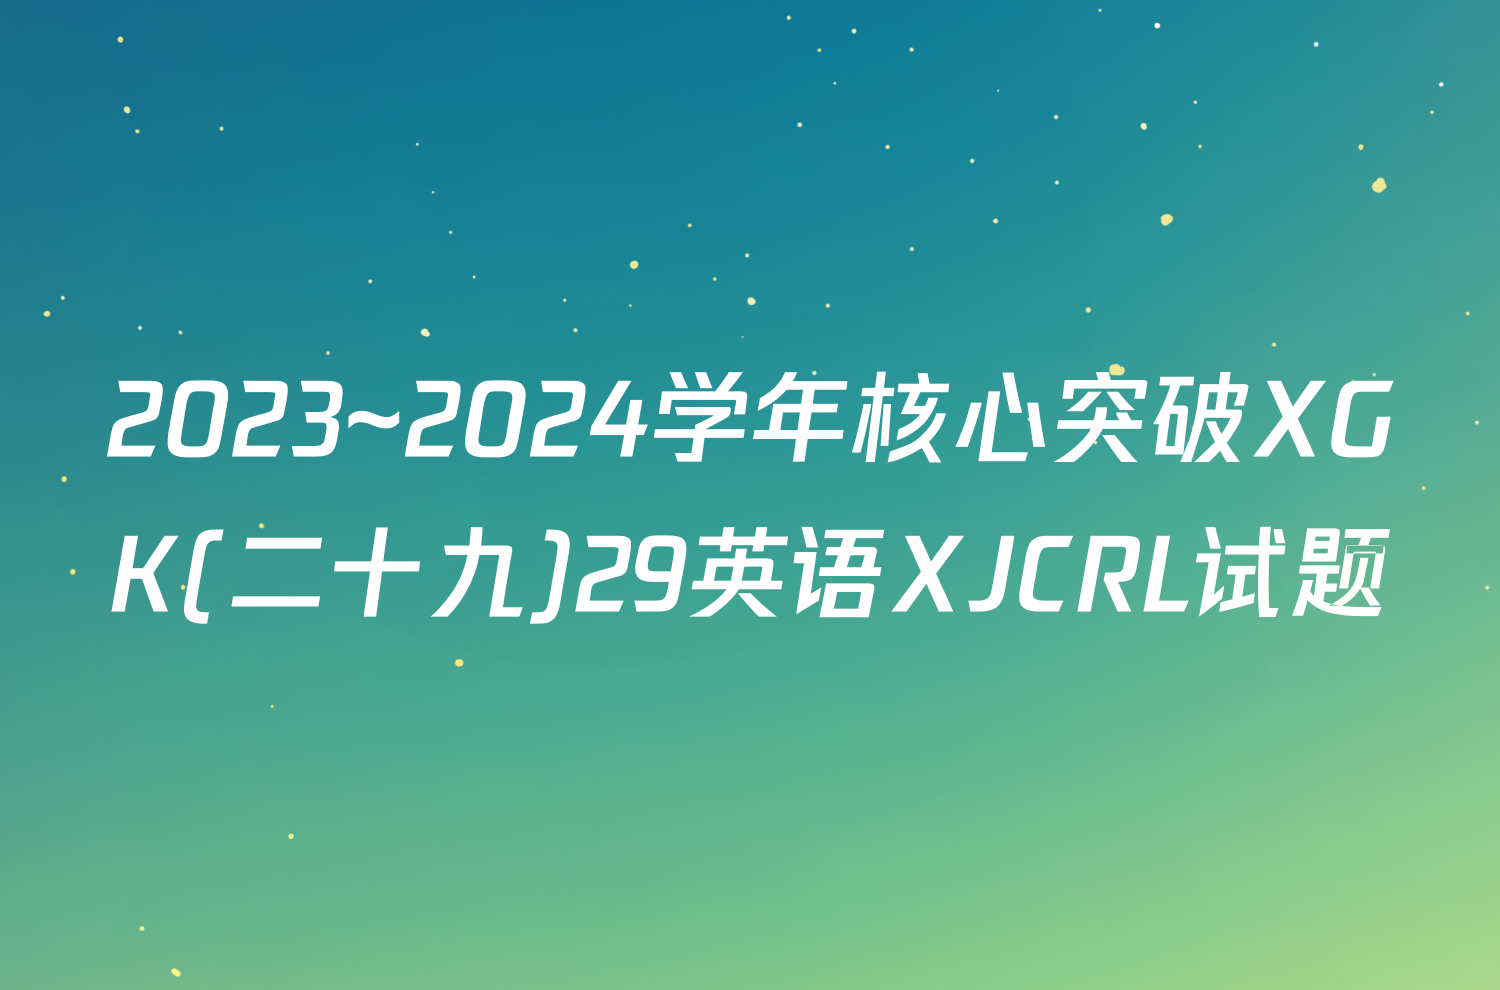 2023~2024学年核心突破XGK(二十九)29英语XJCRL试题